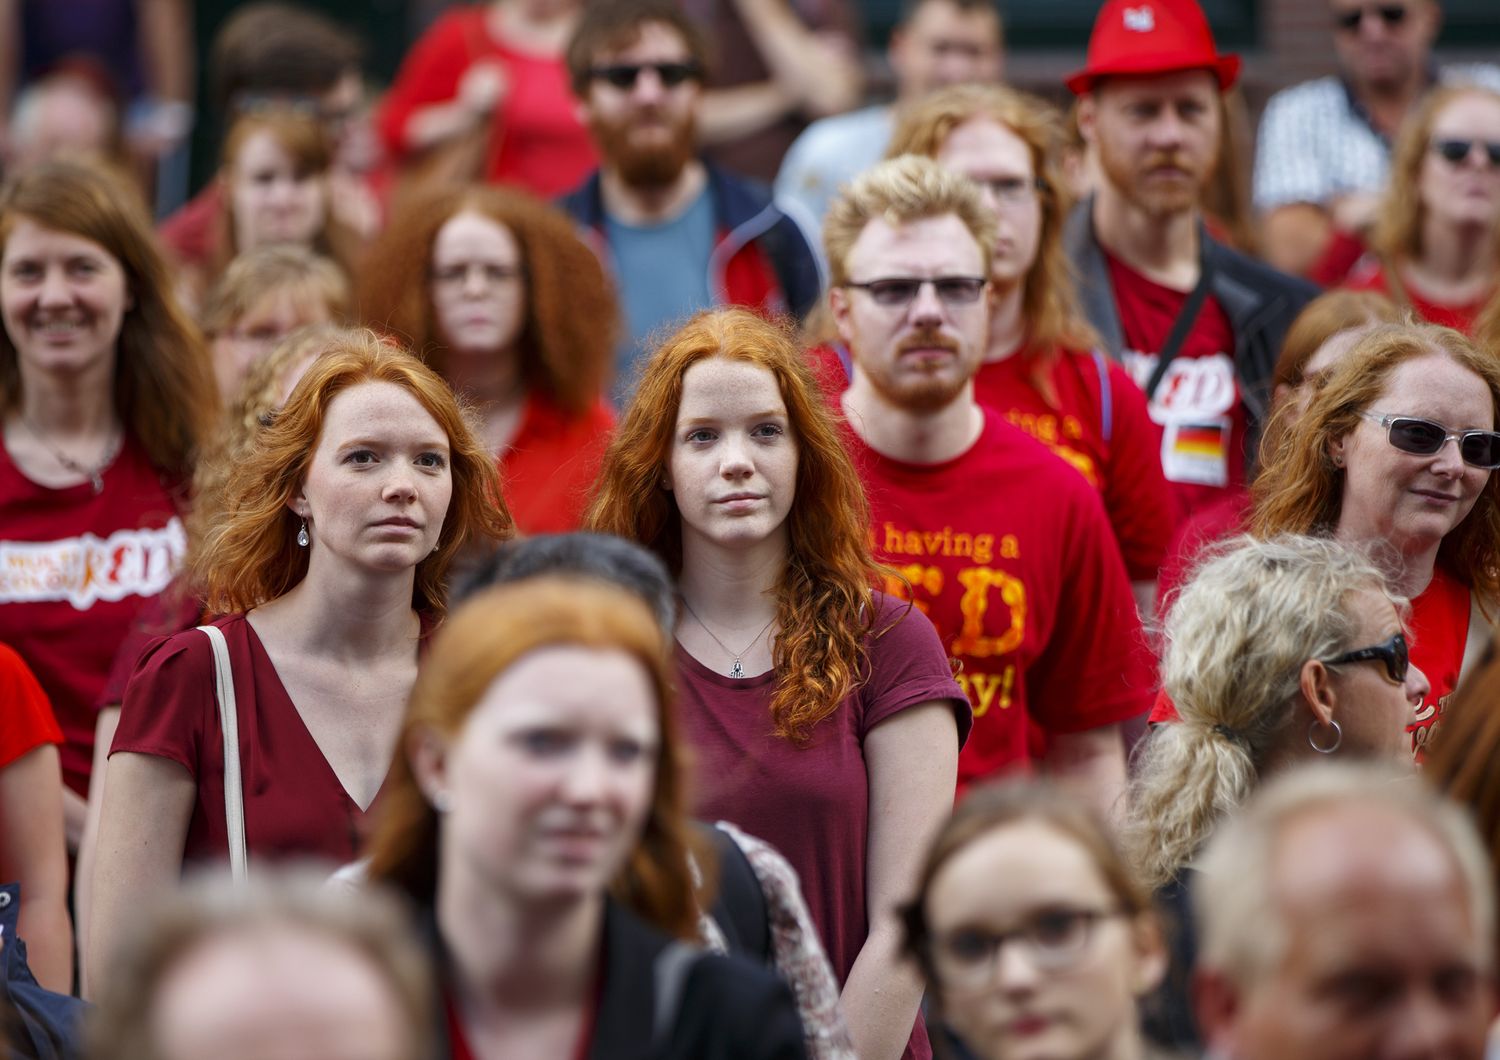 Il&nbsp;RedHead Days, raduno mondiale delle&nbsp;persone con i capelli rossi (Agf)